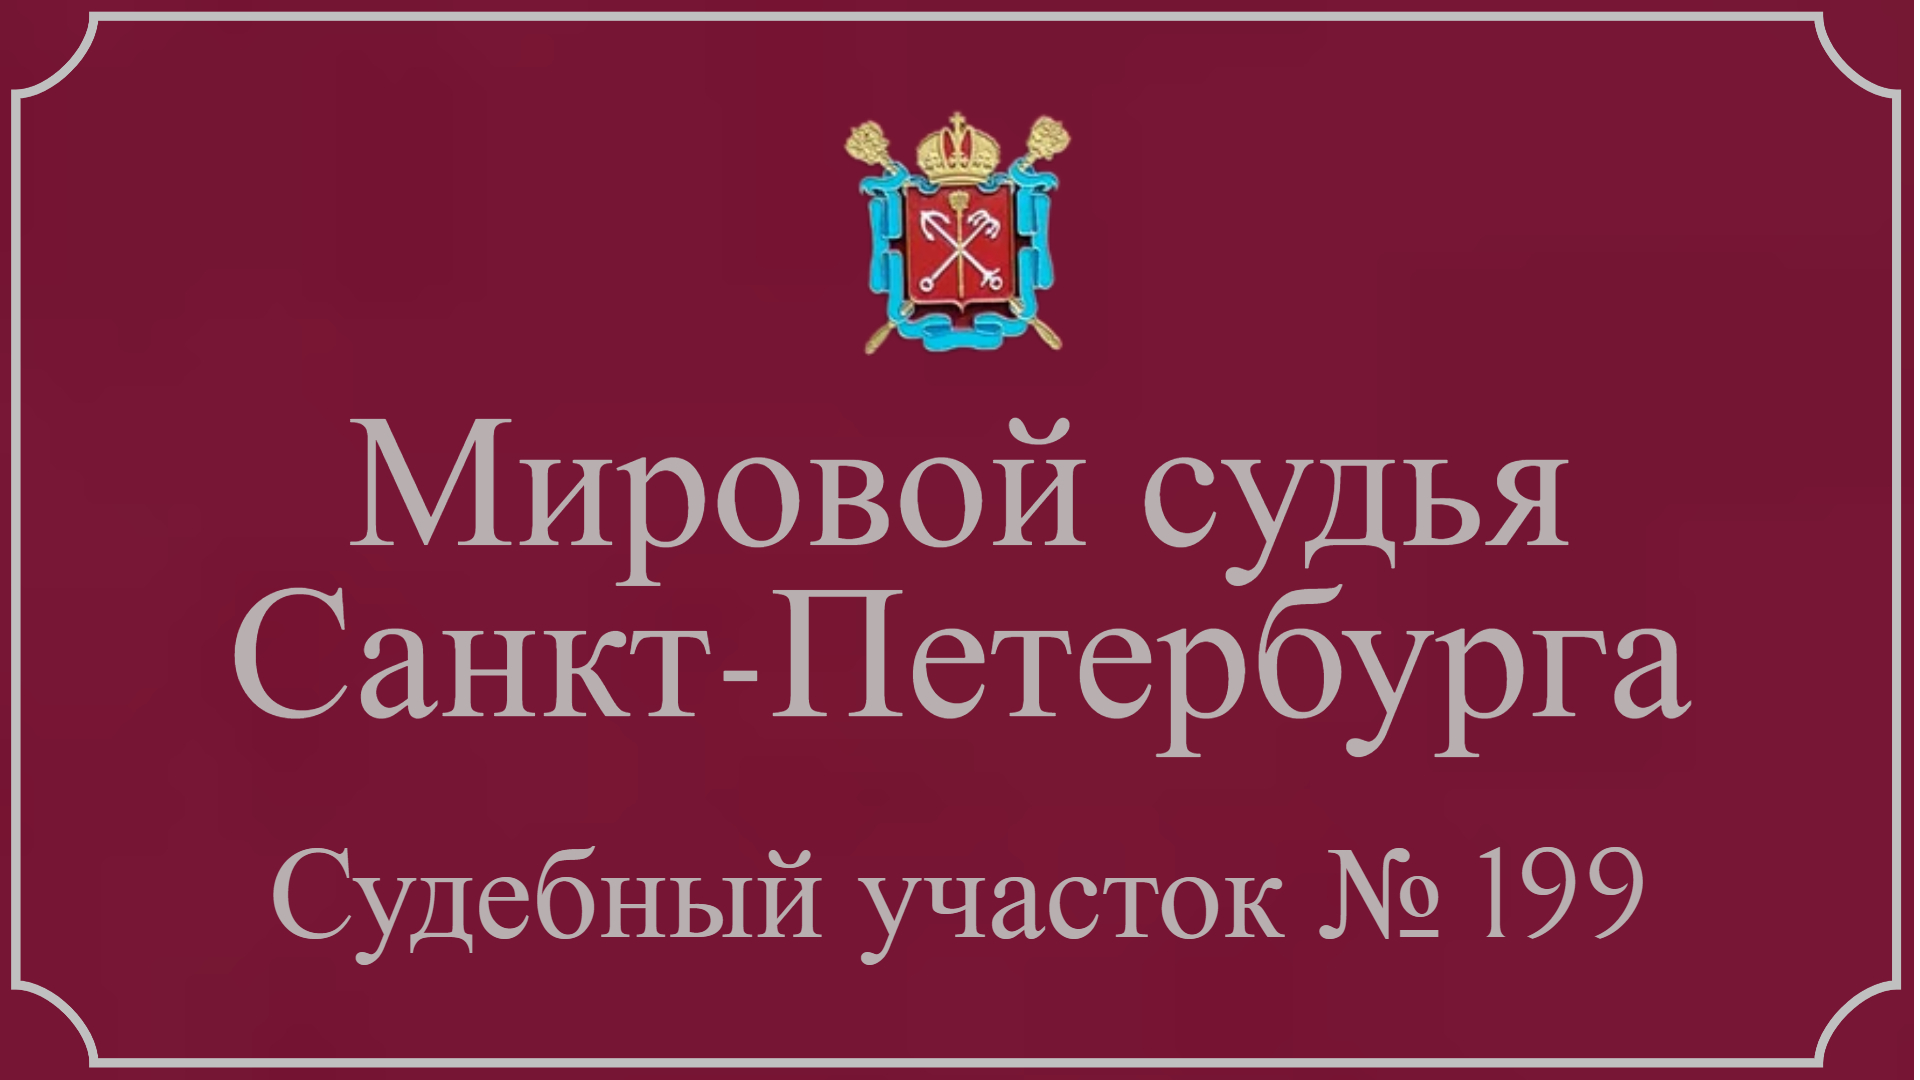 Информация по 199 судебному участку в Санкт-Петербурге.